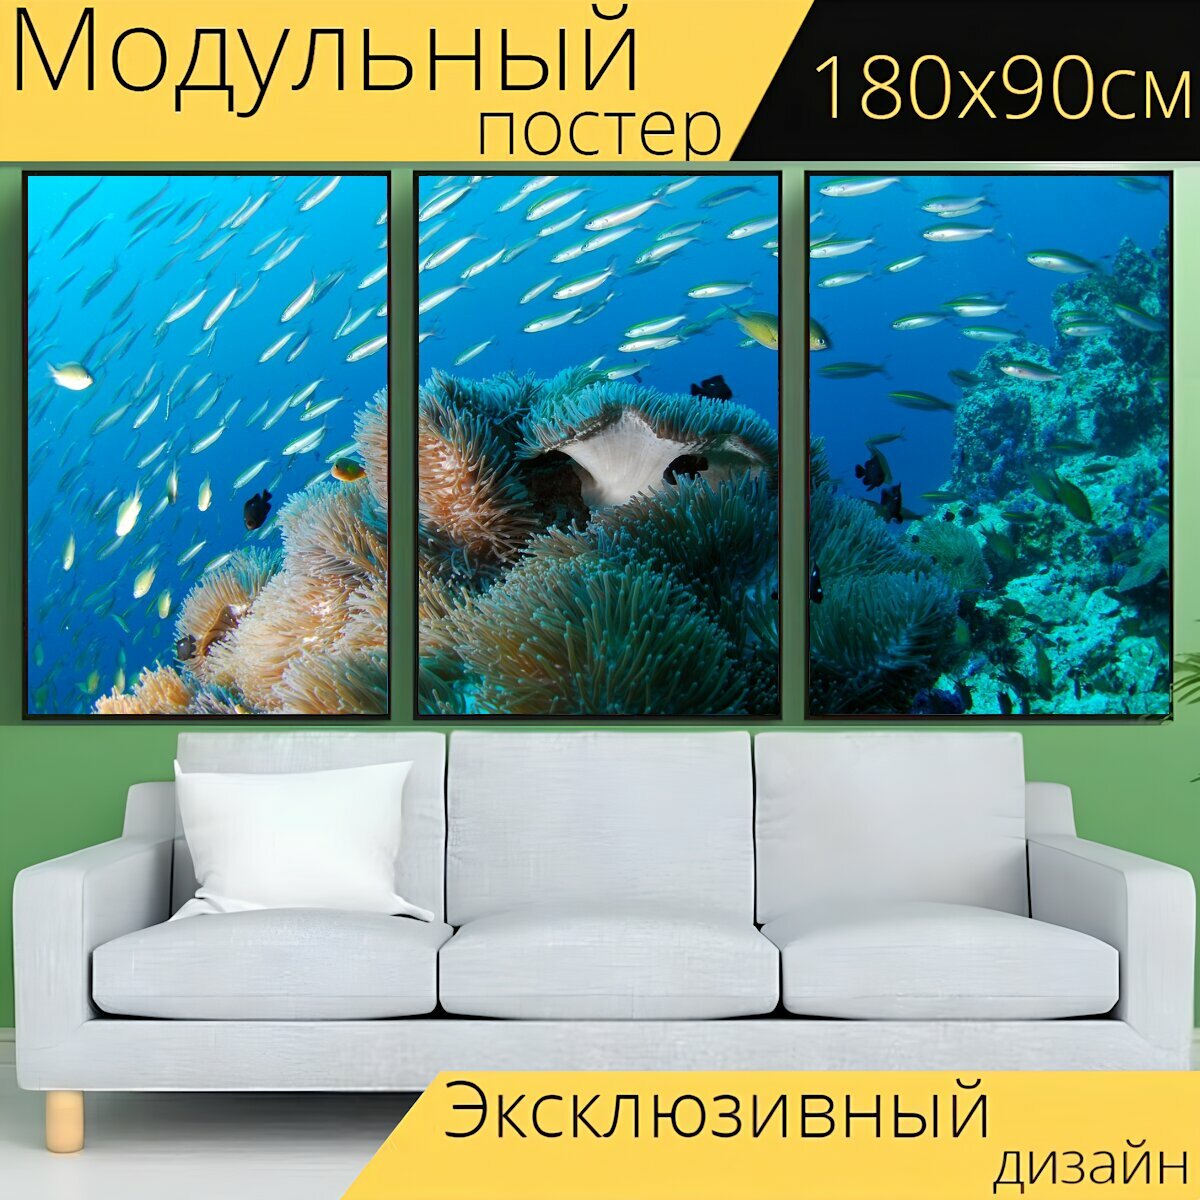 Модульный постер "Дайвинг, подводный, океан" 180 x 90 см. для интерьера